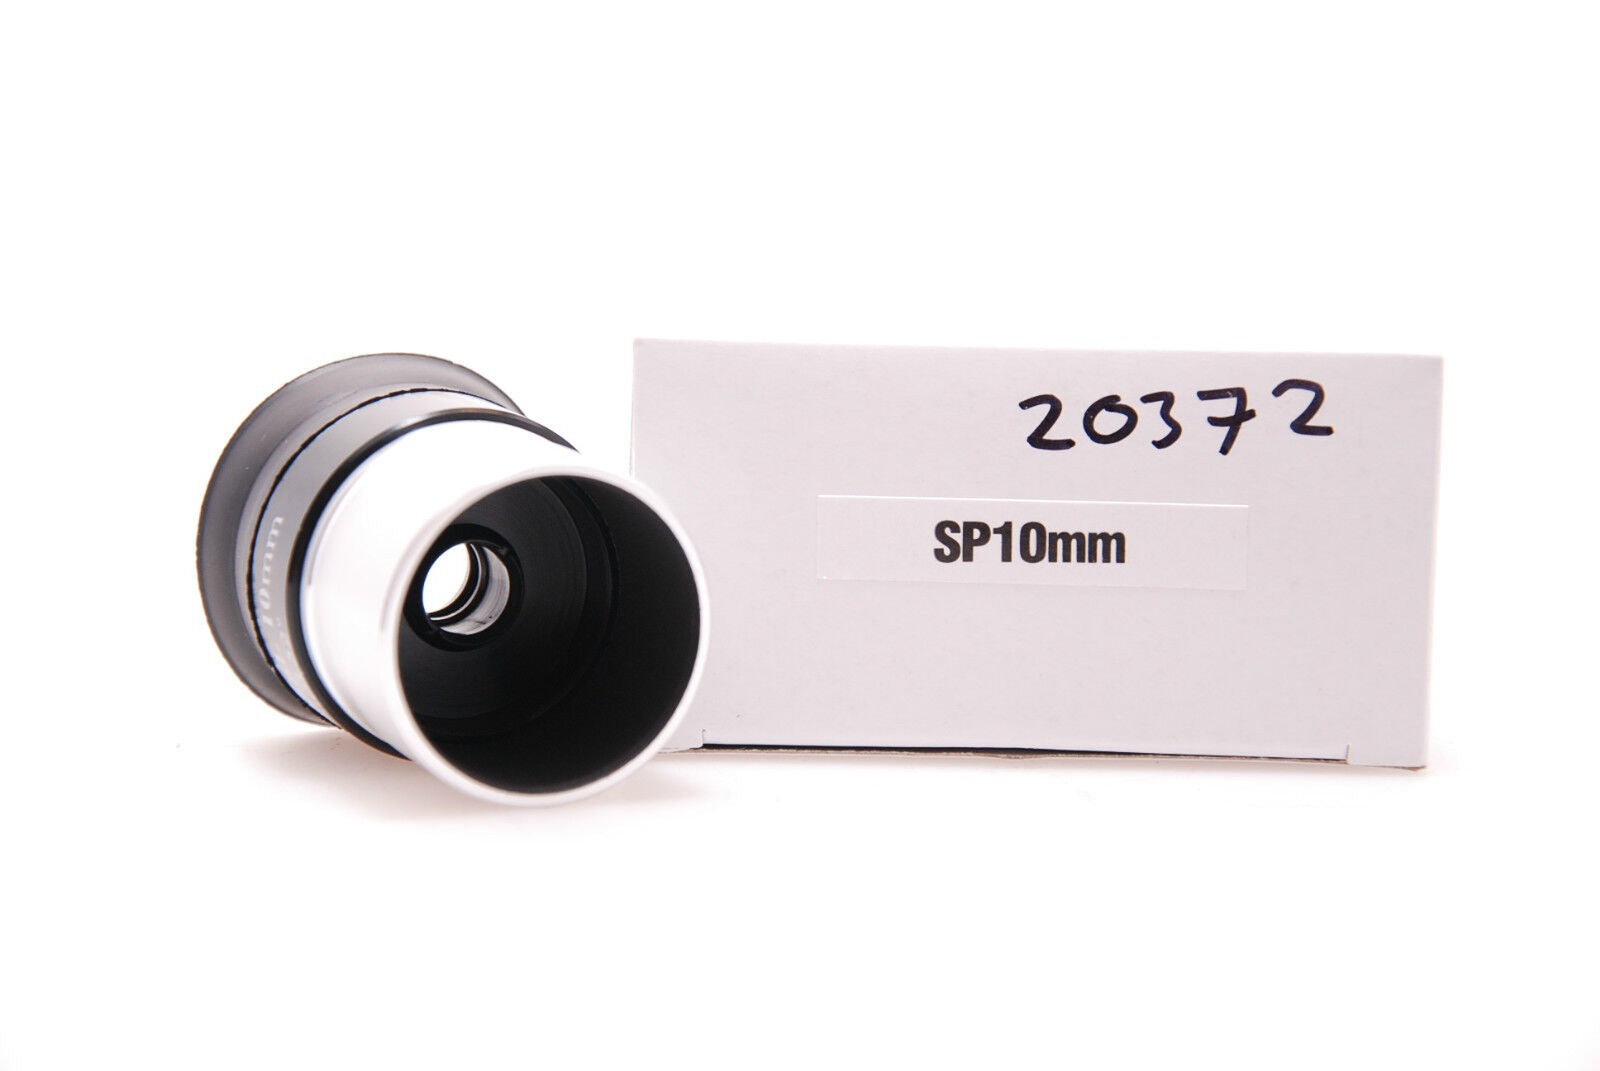 Sky-Watcher SP Series 10mm Super Plossl Eyepiece 20372